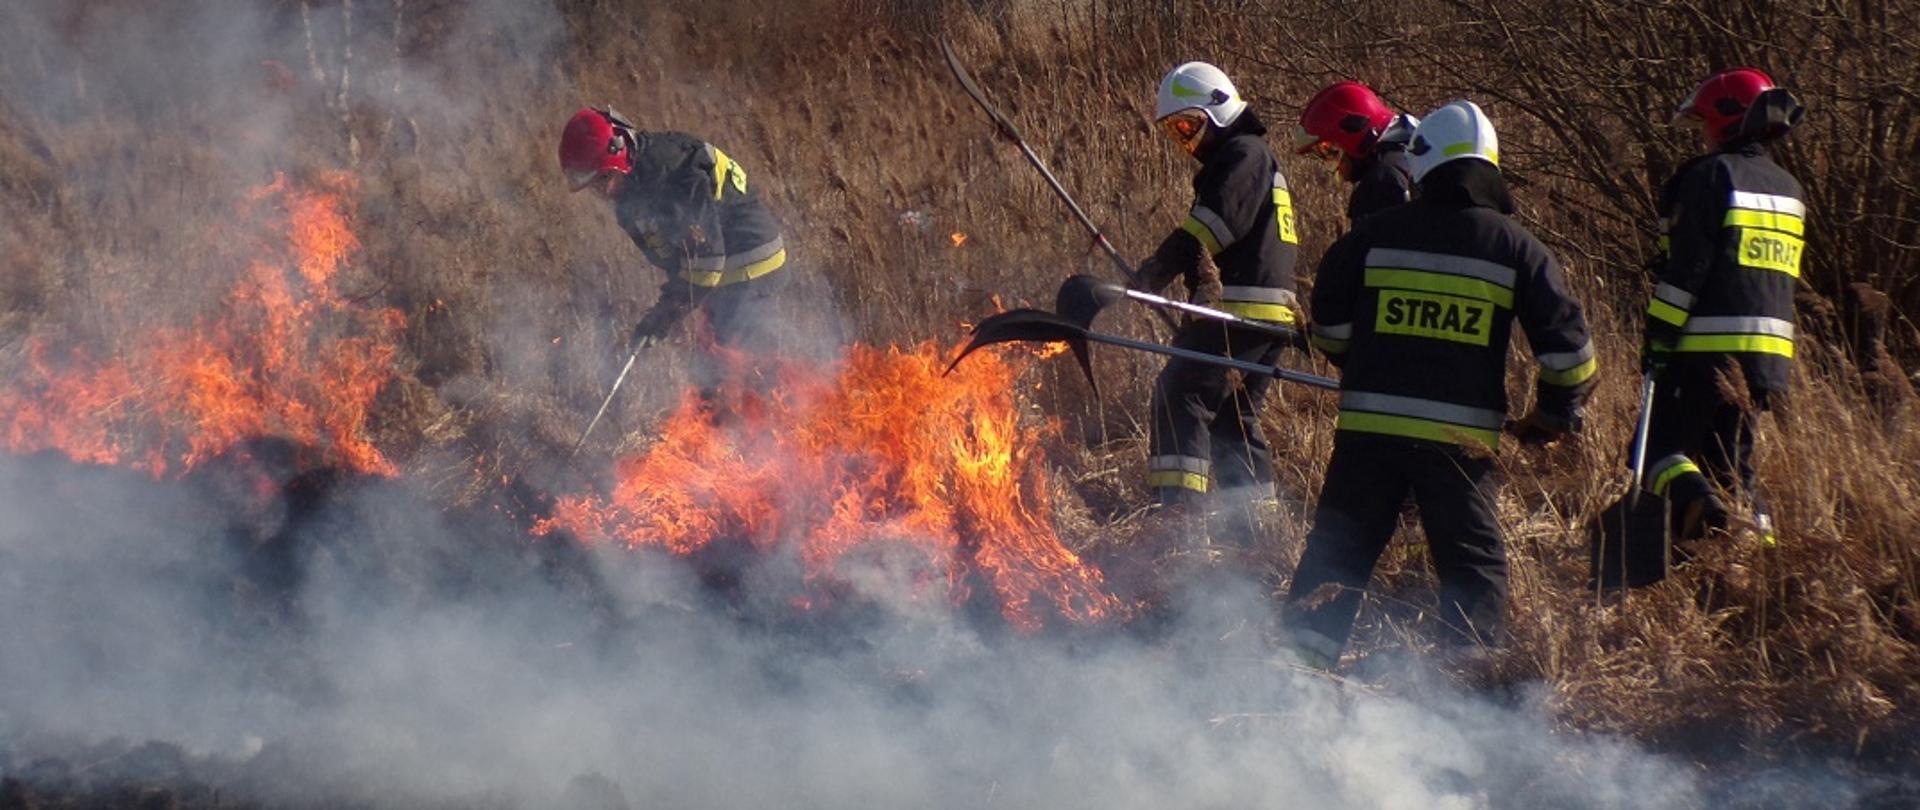 Na zdjęciu widzimy trzech strażaków z Państwowej Straży Pożarnej i dwóch z strażaków z Ochotniczej Straży Pożarnej gaszących pożar trawy na nieużytkach tłumicami. 